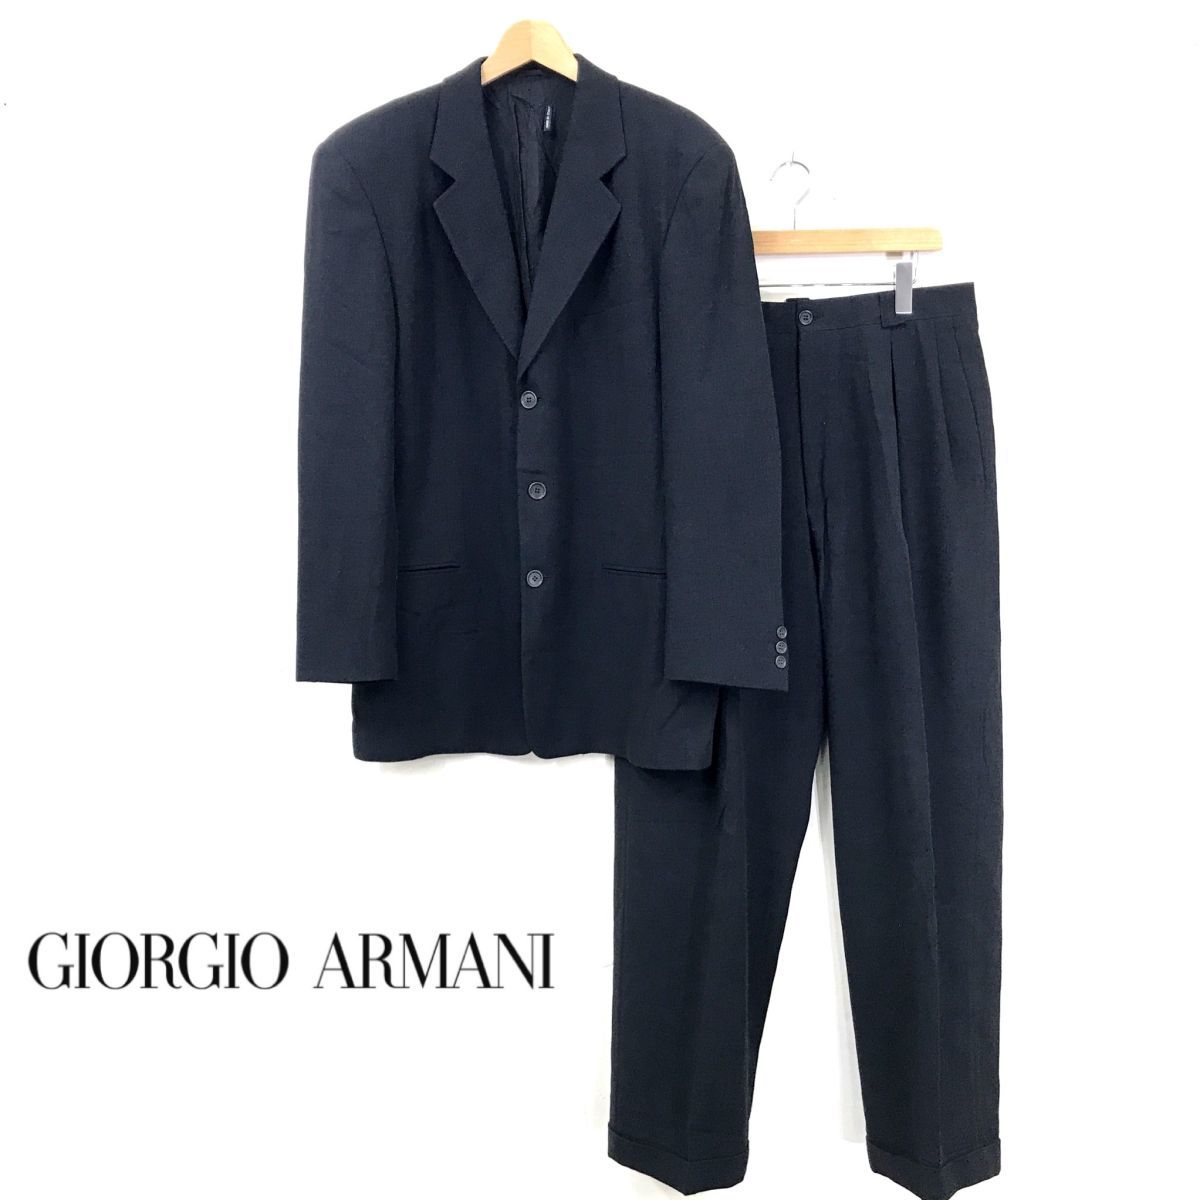 19880円大手通販 直営通販 GIORGIO ARMANI セットアップ スーツ